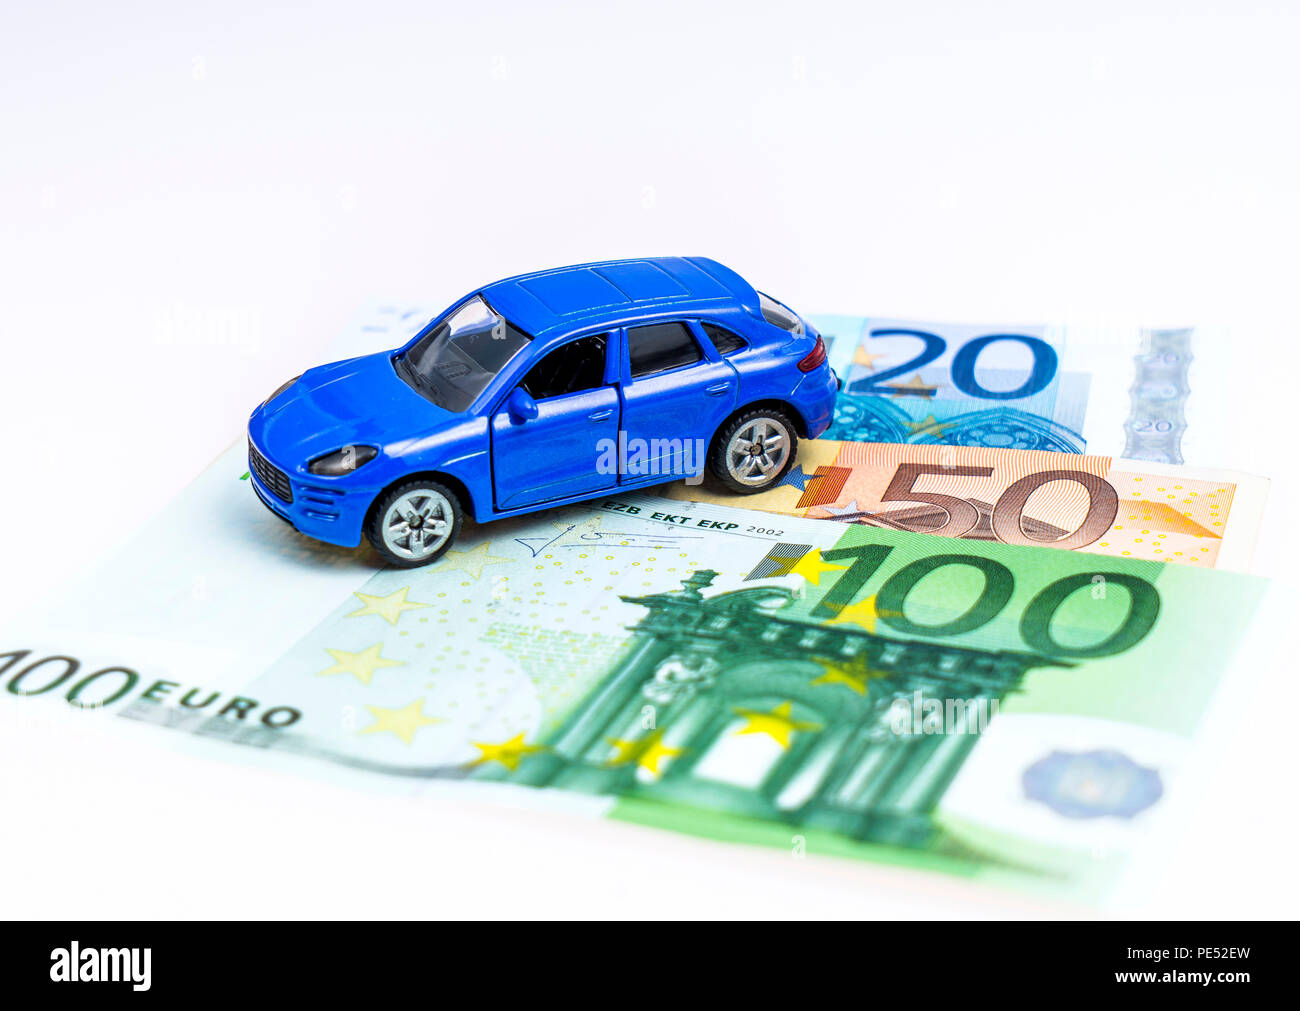 Modellauto und Euro Scheine, Studioaufnahme Stock Photo